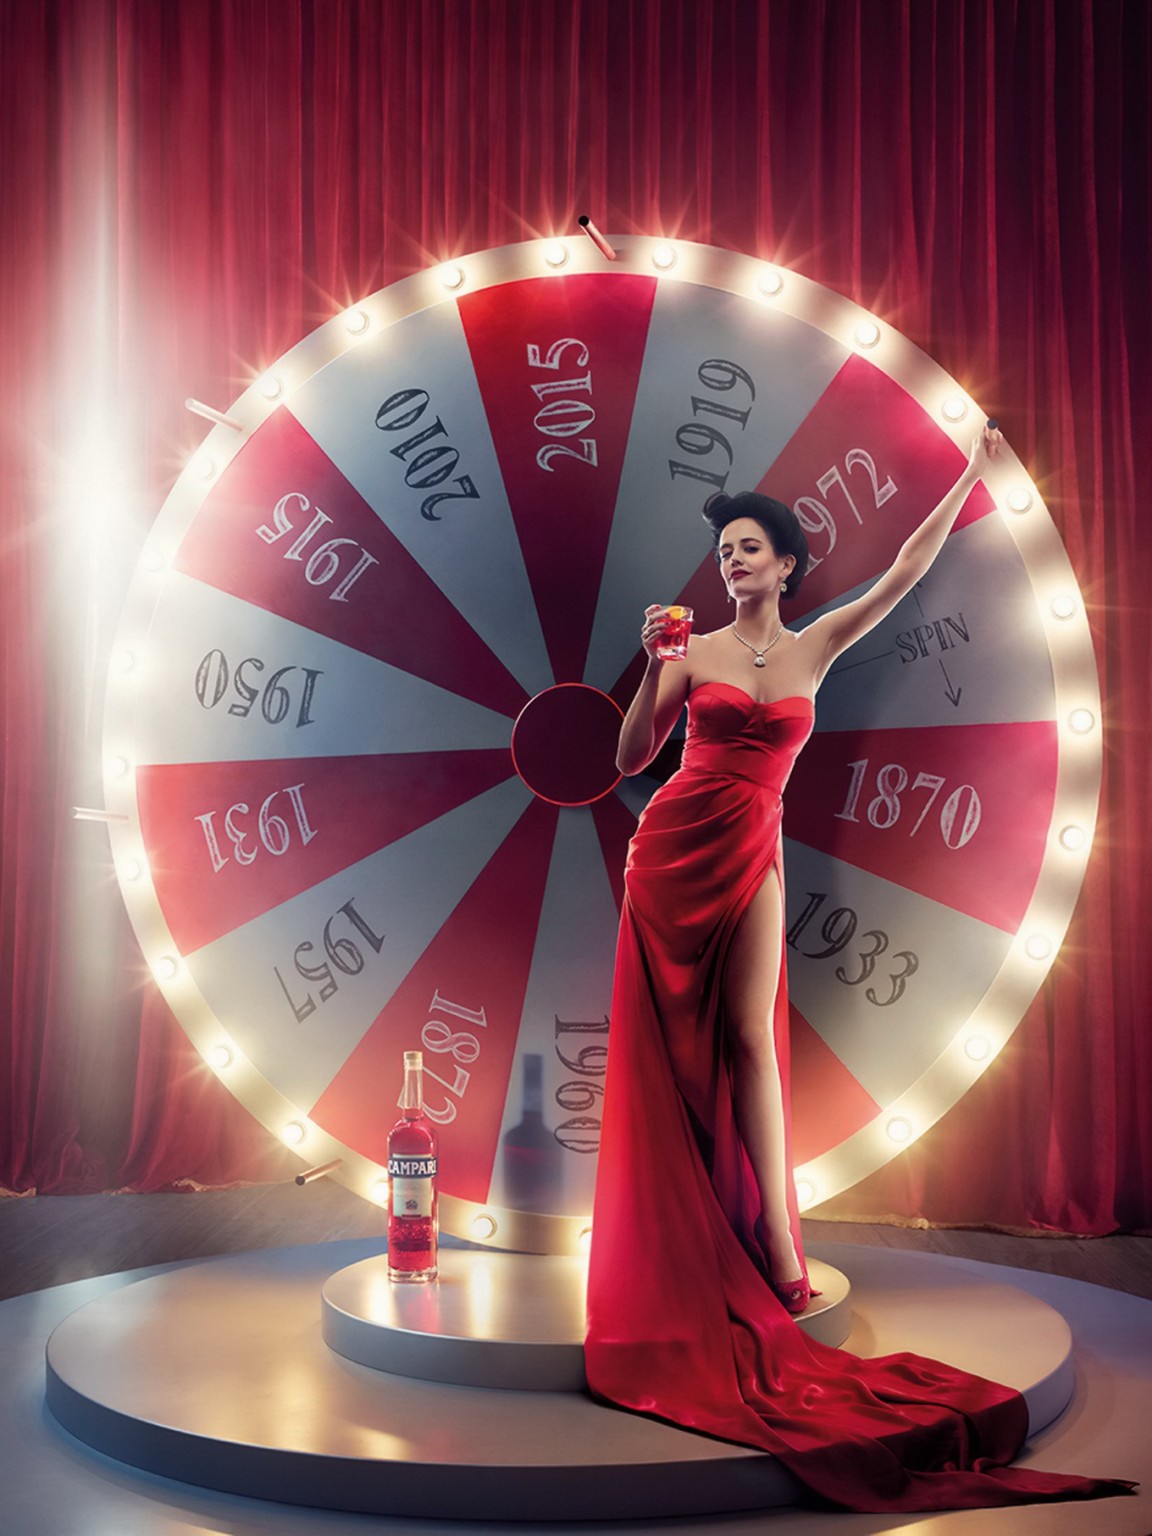 Eva green vollbusig und langbeinig in verschiedenen roten Outfits für den Campari-Kalender 2015 p
 #75181694